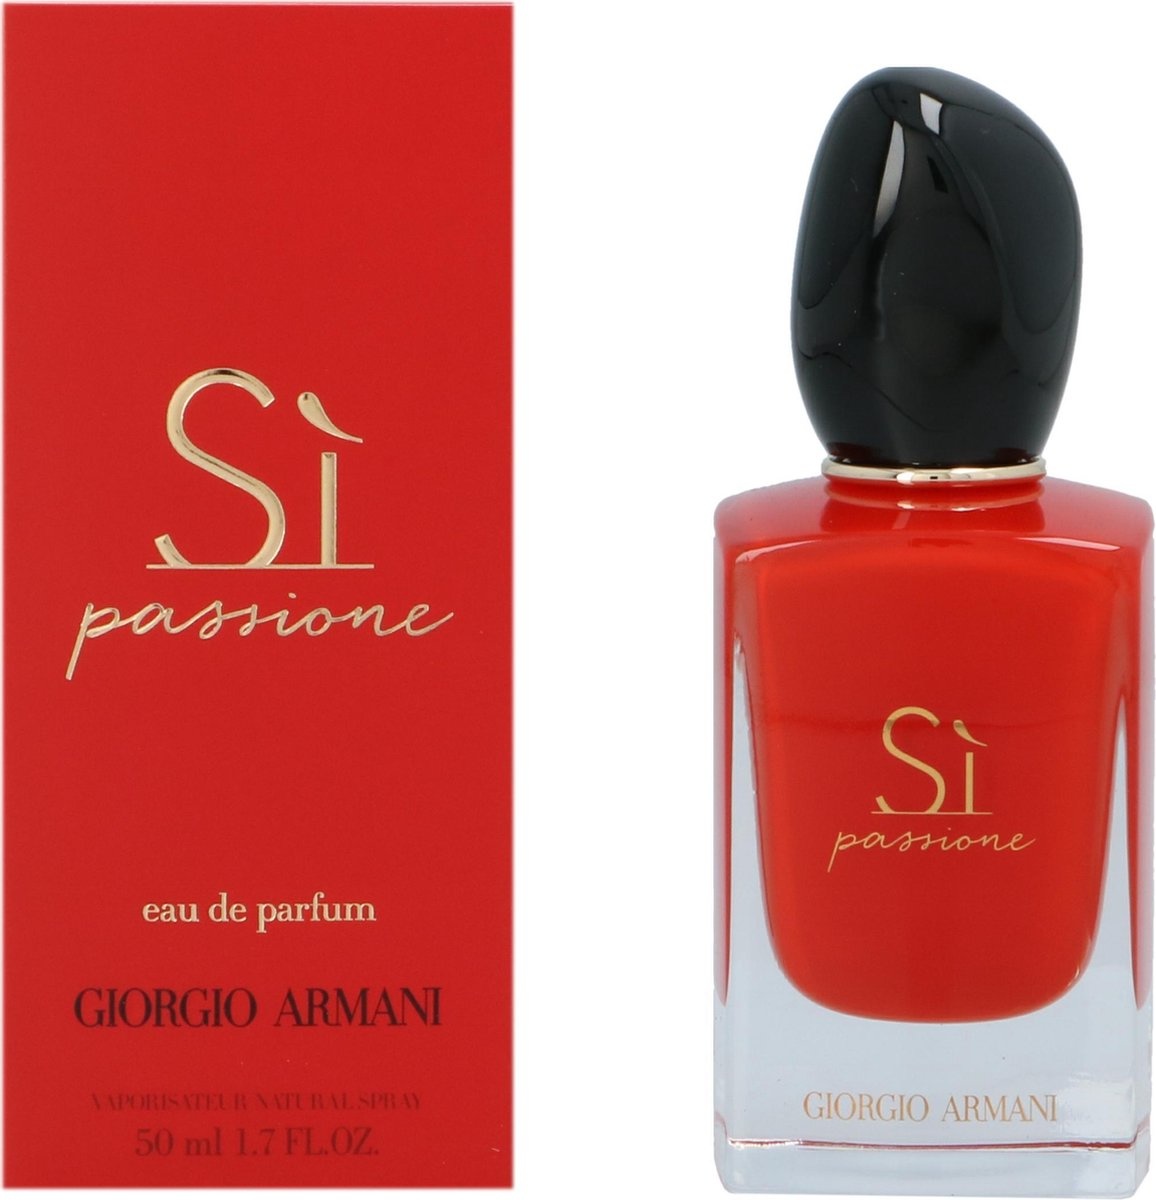 Giorgio Armani Sì Passione 50 ml - Eau de Parfum - Damesparfum